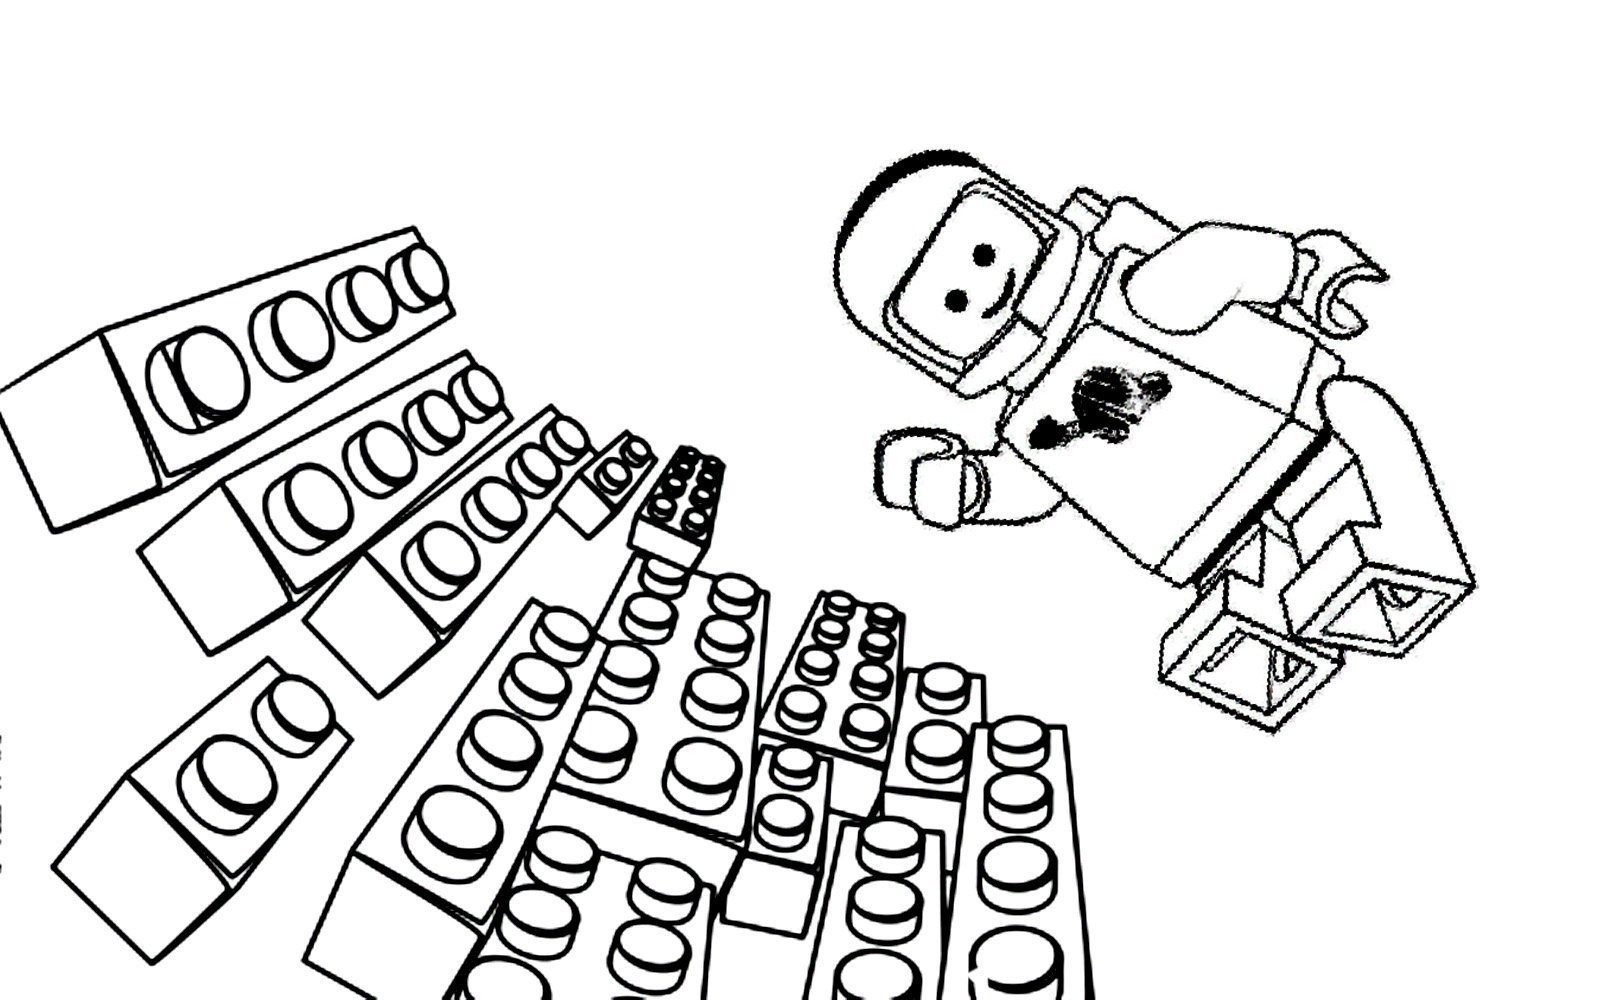 Раскраски Лего Френдс. Распечатать для девочек | WONDER DAY — Раскраски для детей и взрослых